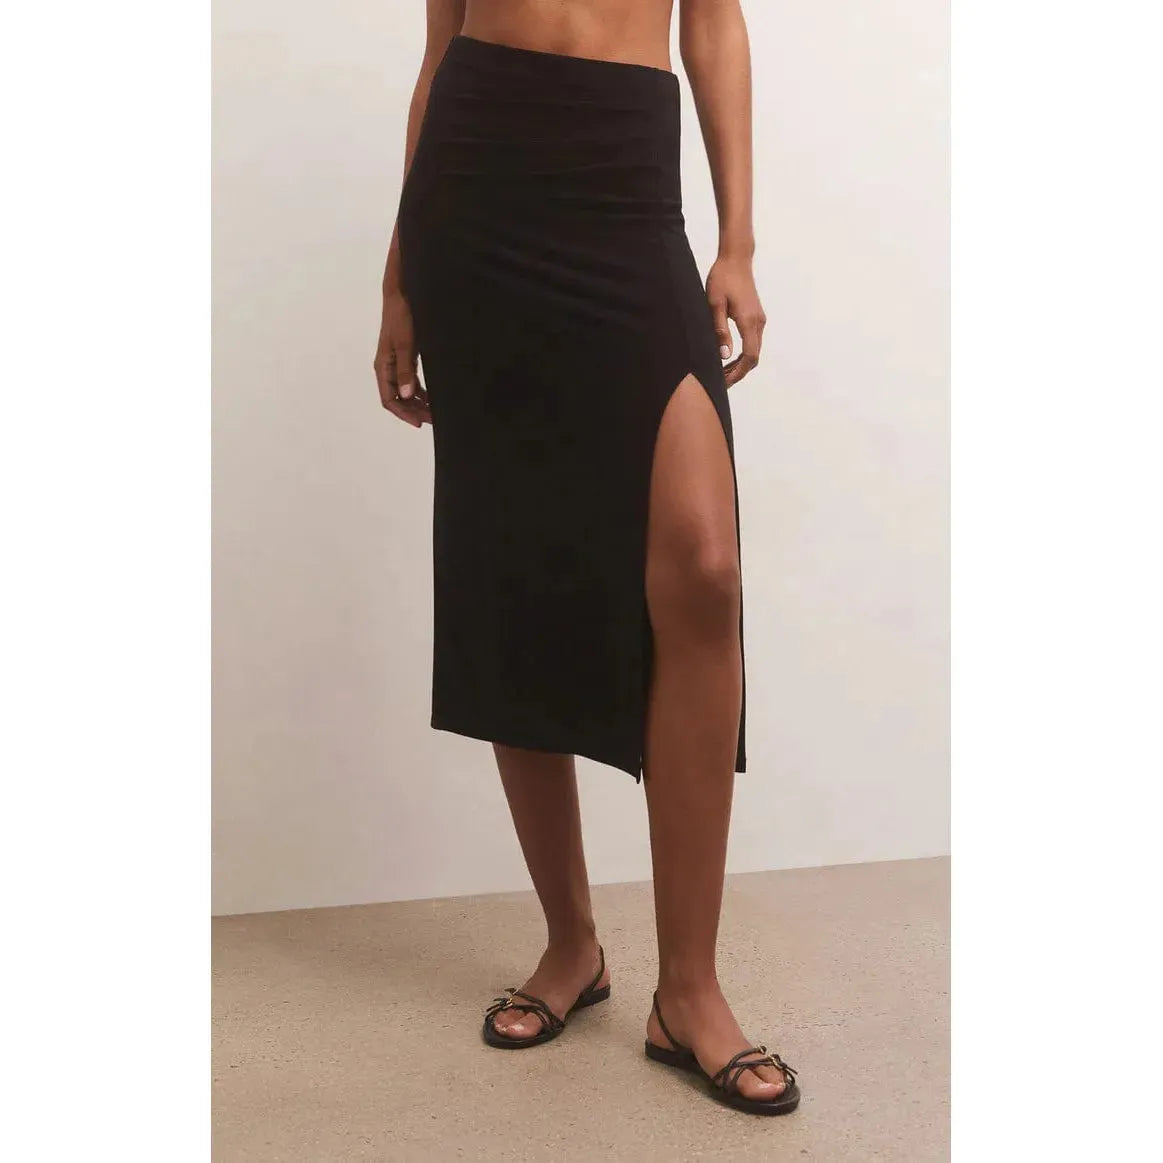 Underground Clothing Black / XS Z Supply Miley Skirt